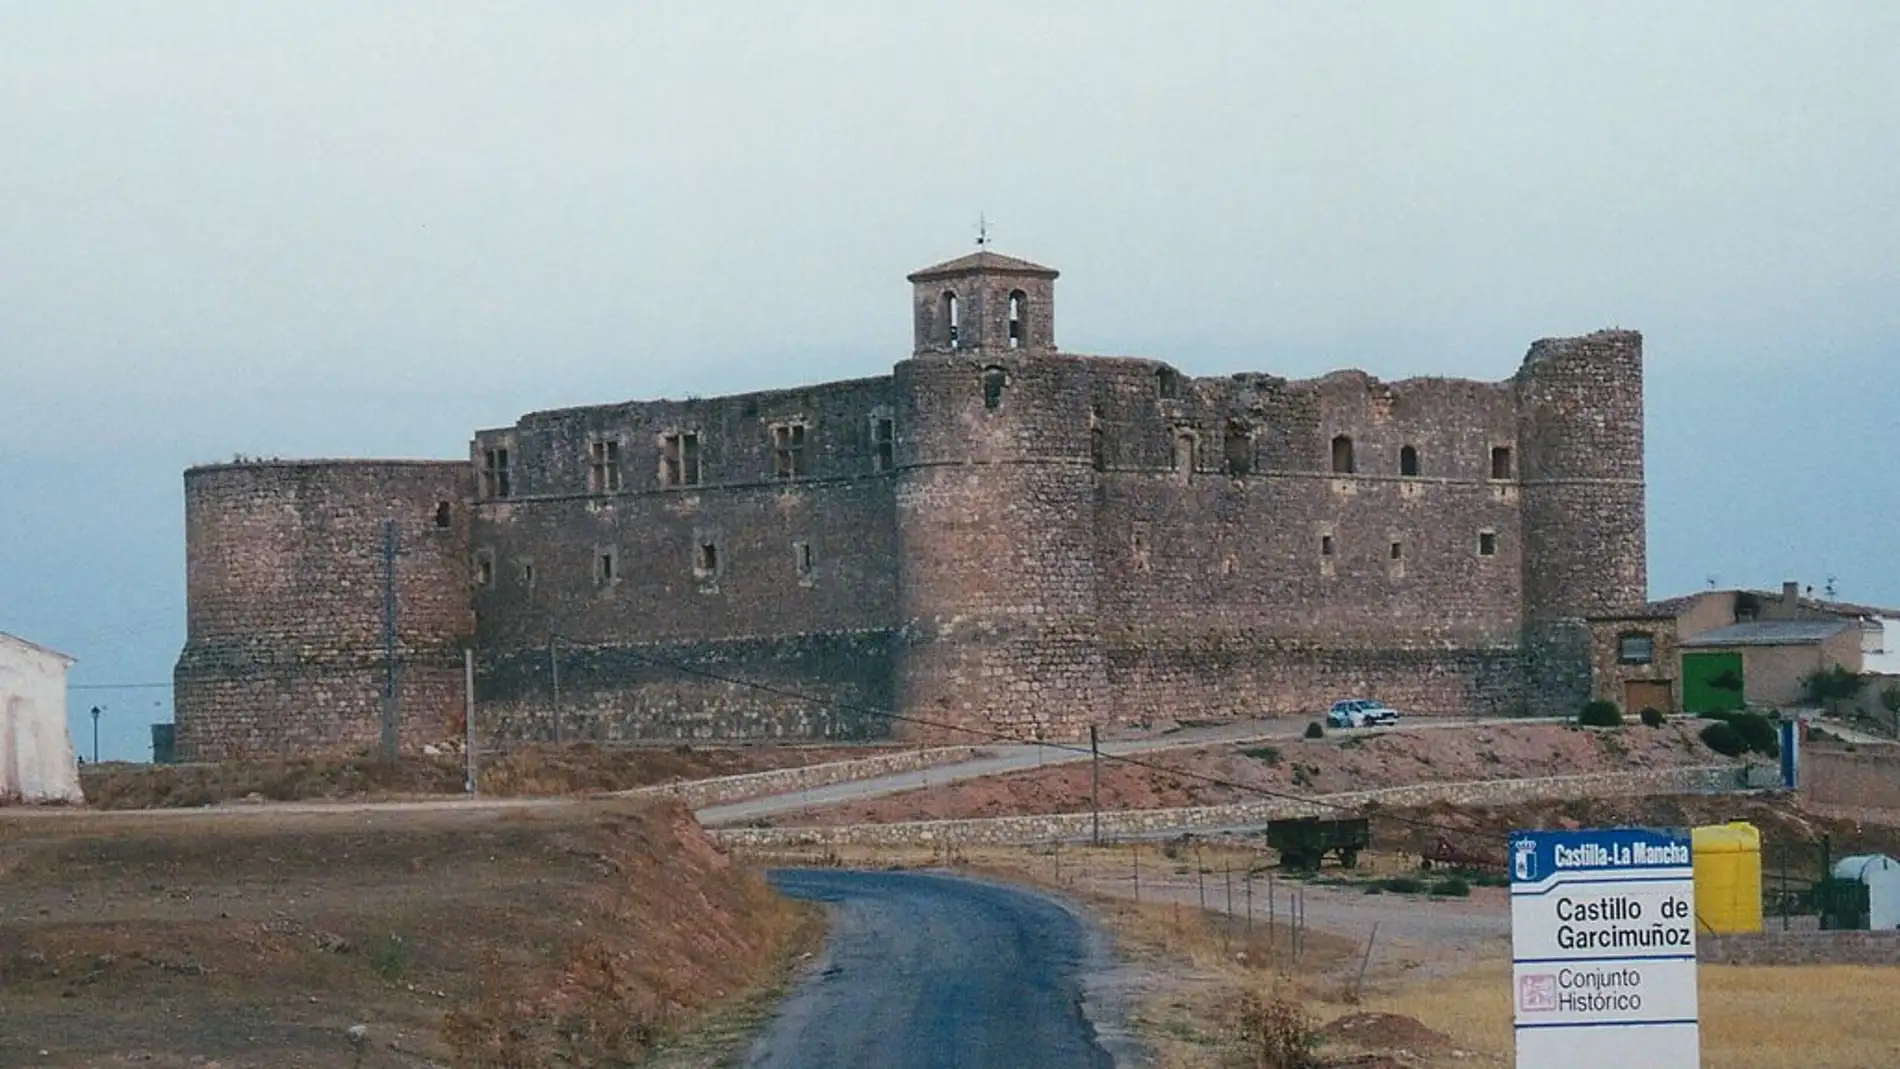 Castillo de Castillo de Garcimuñoz. Cuenca